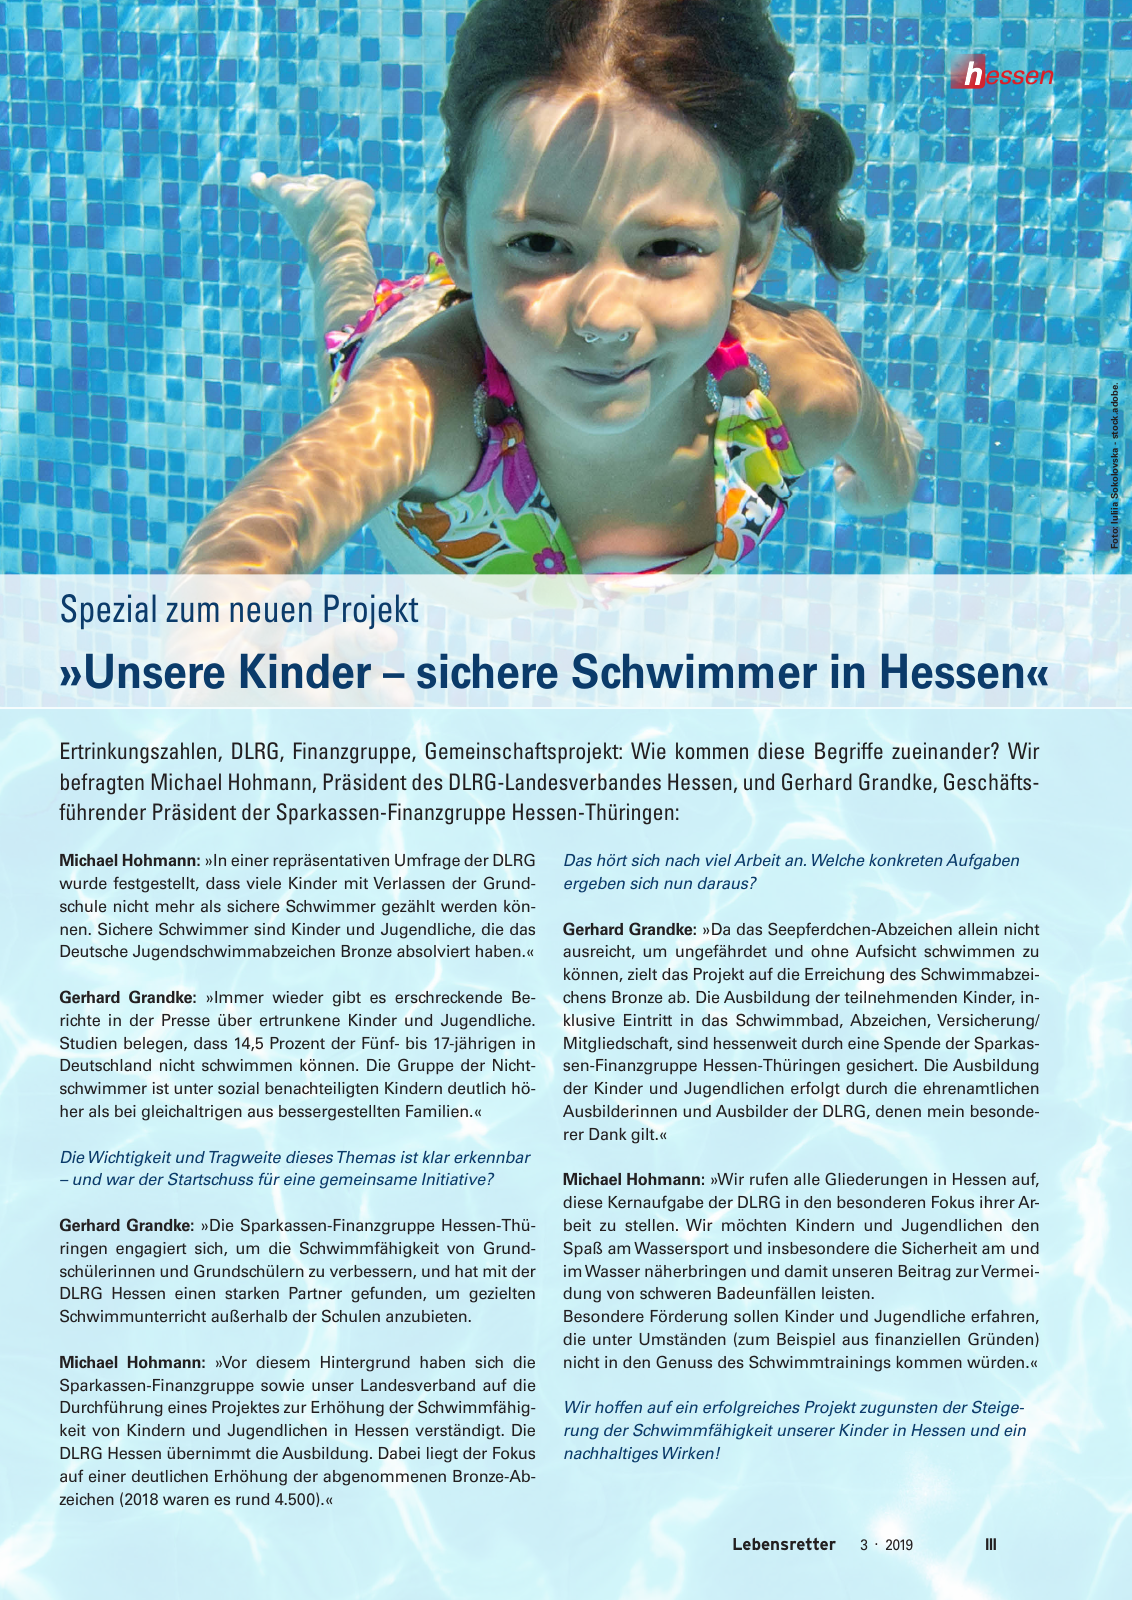 Vorschau Lebensretter 3/2019 - Hessen Regionalausgabe Seite 5